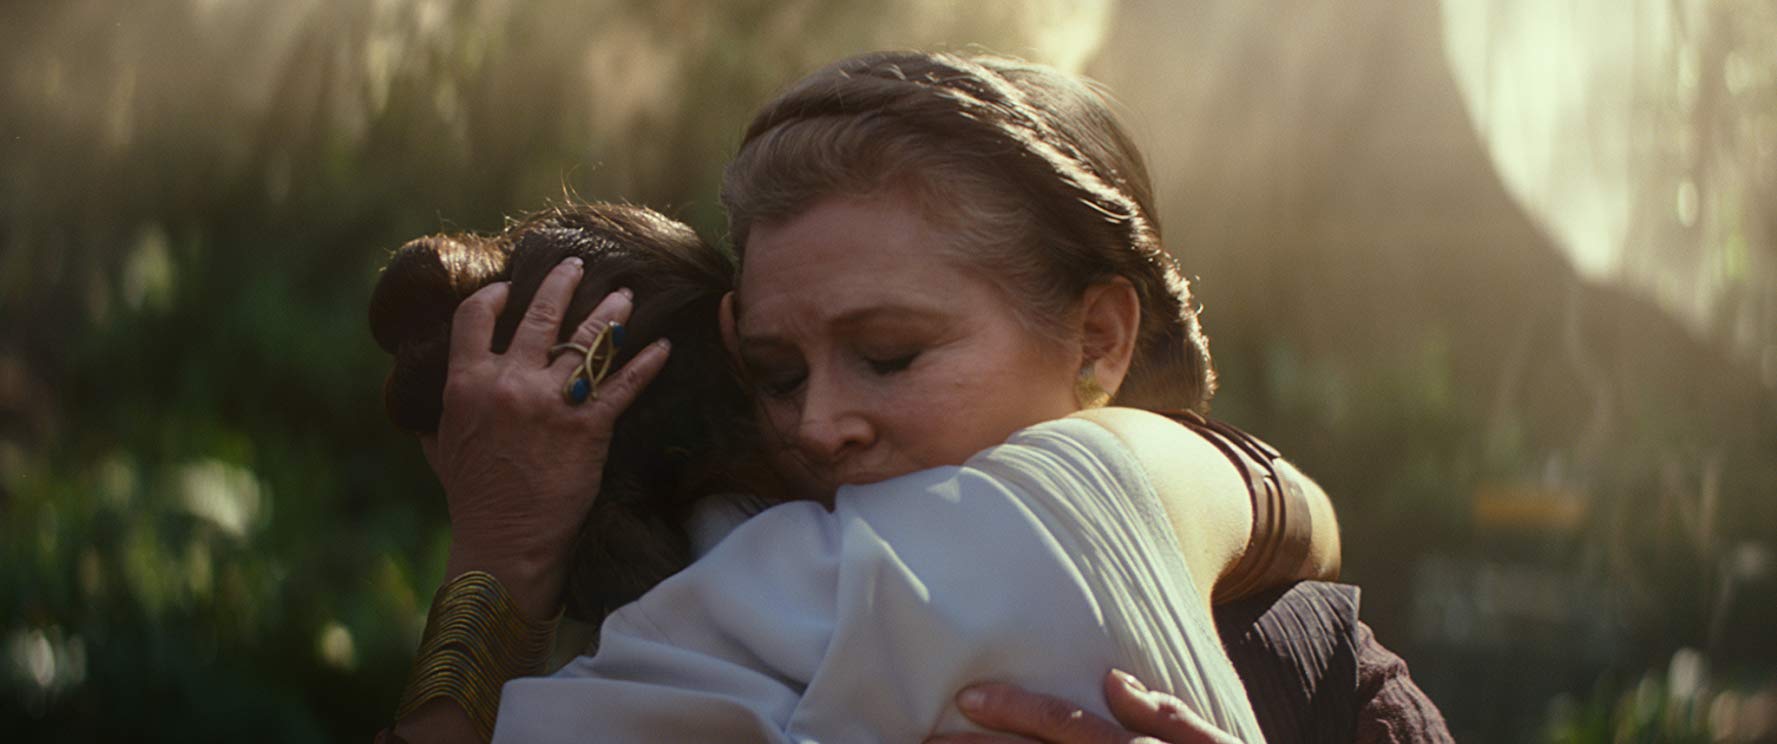 Hija de Carrie Fisher recuerda a su madre con emotiva canción en la bañera